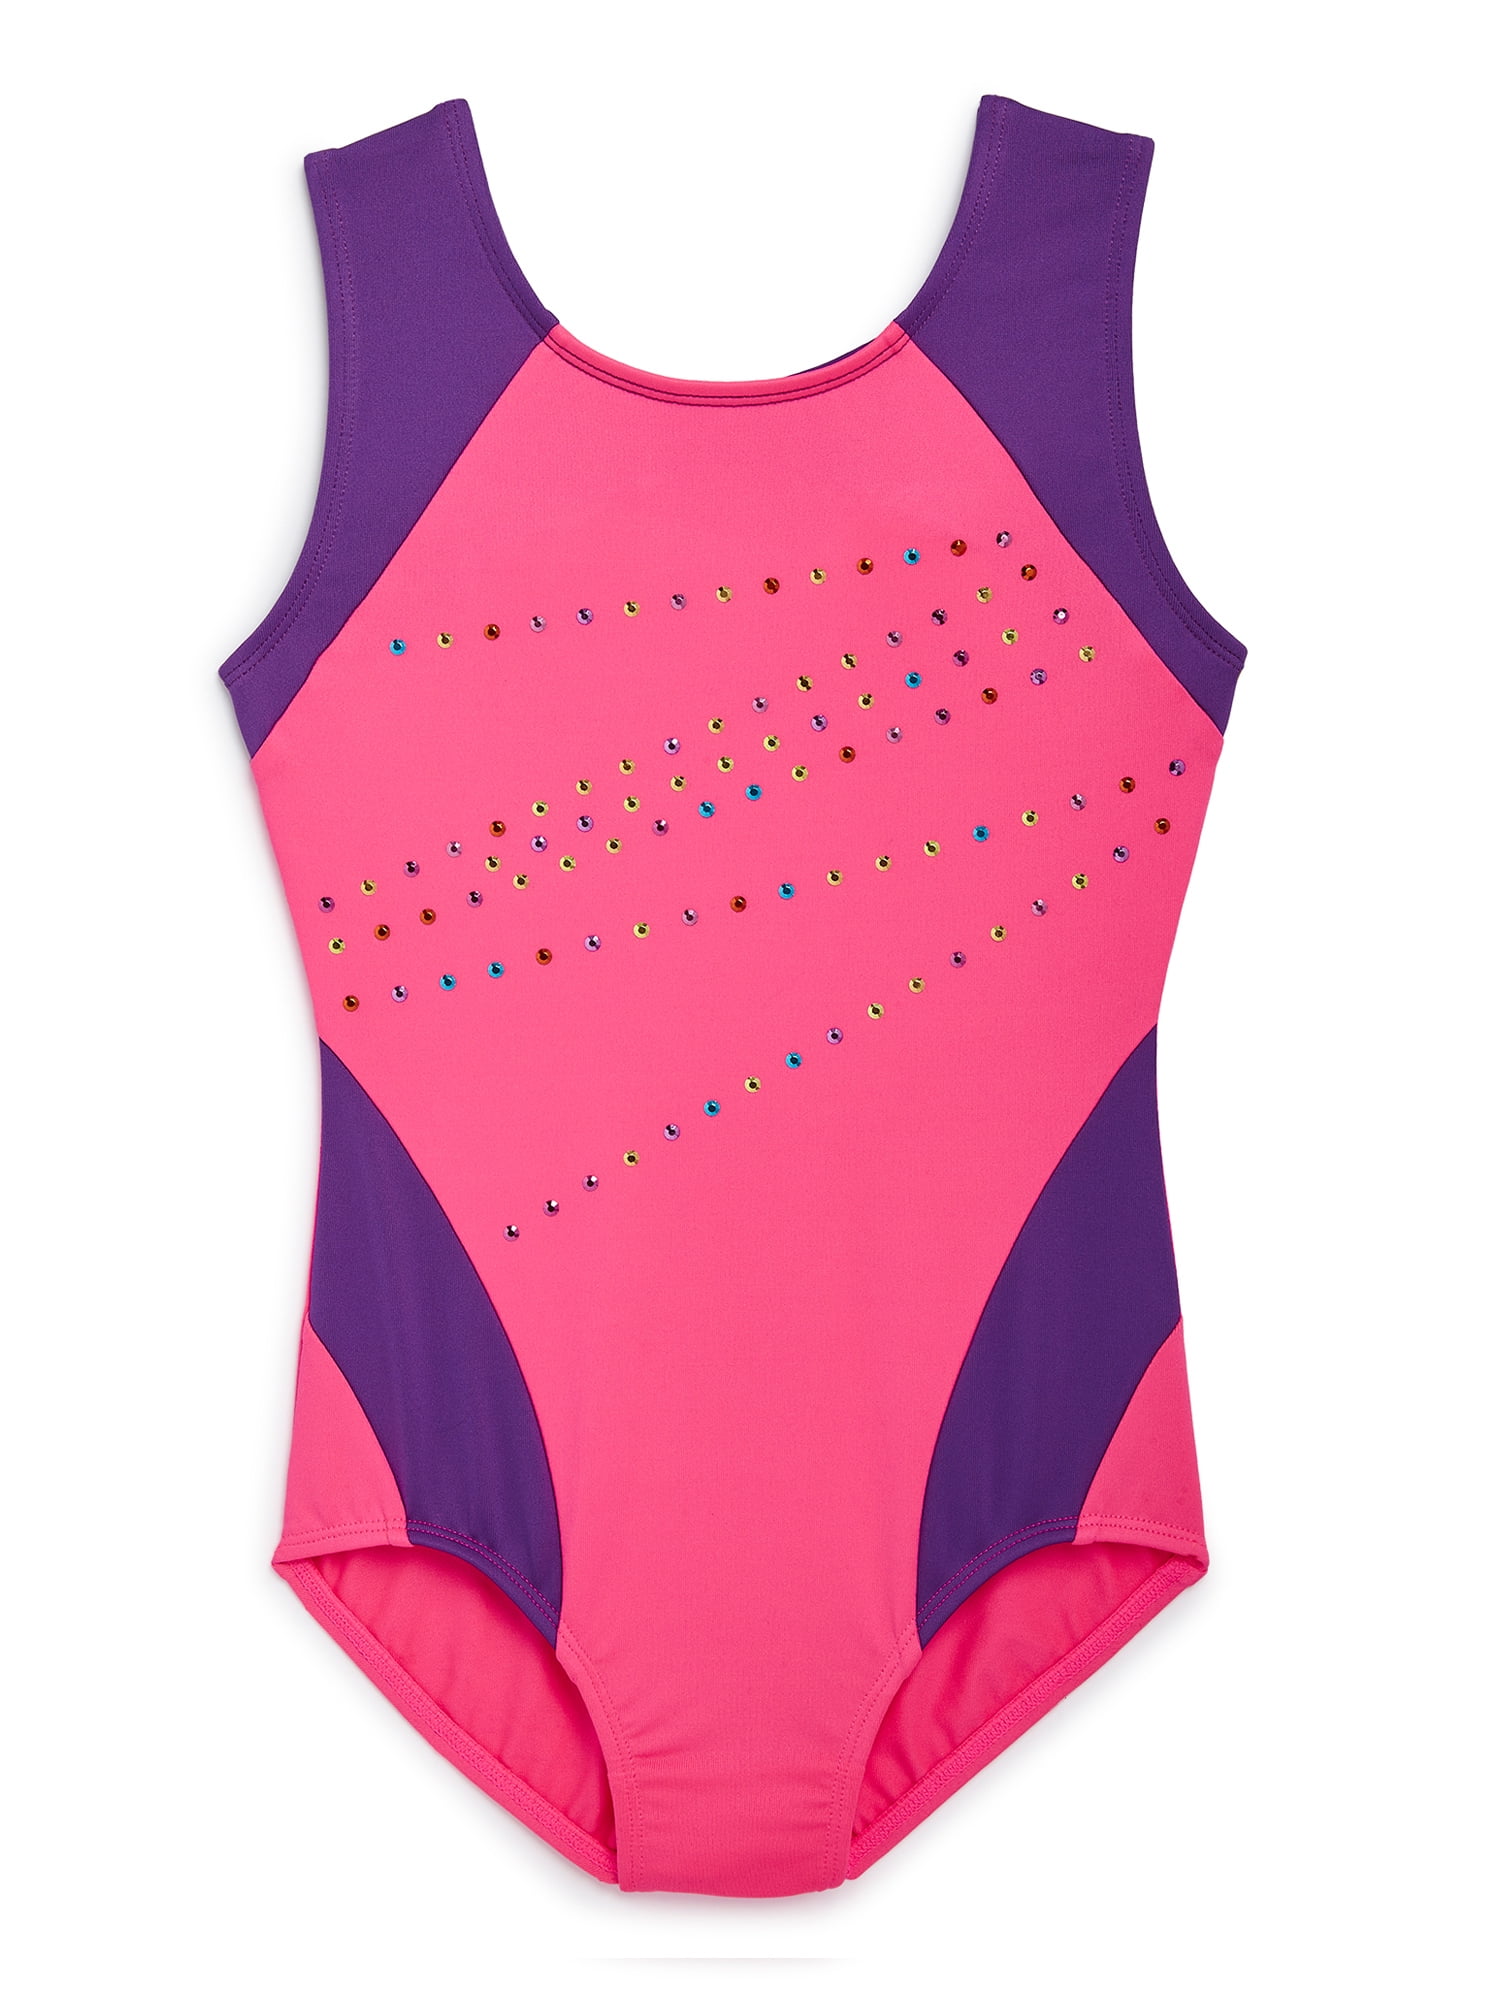 Girls’ Jojo Siwa Sweatshirt Freestyle by Danskin Pink M 7 8 Kids’ Dancewear NWT 